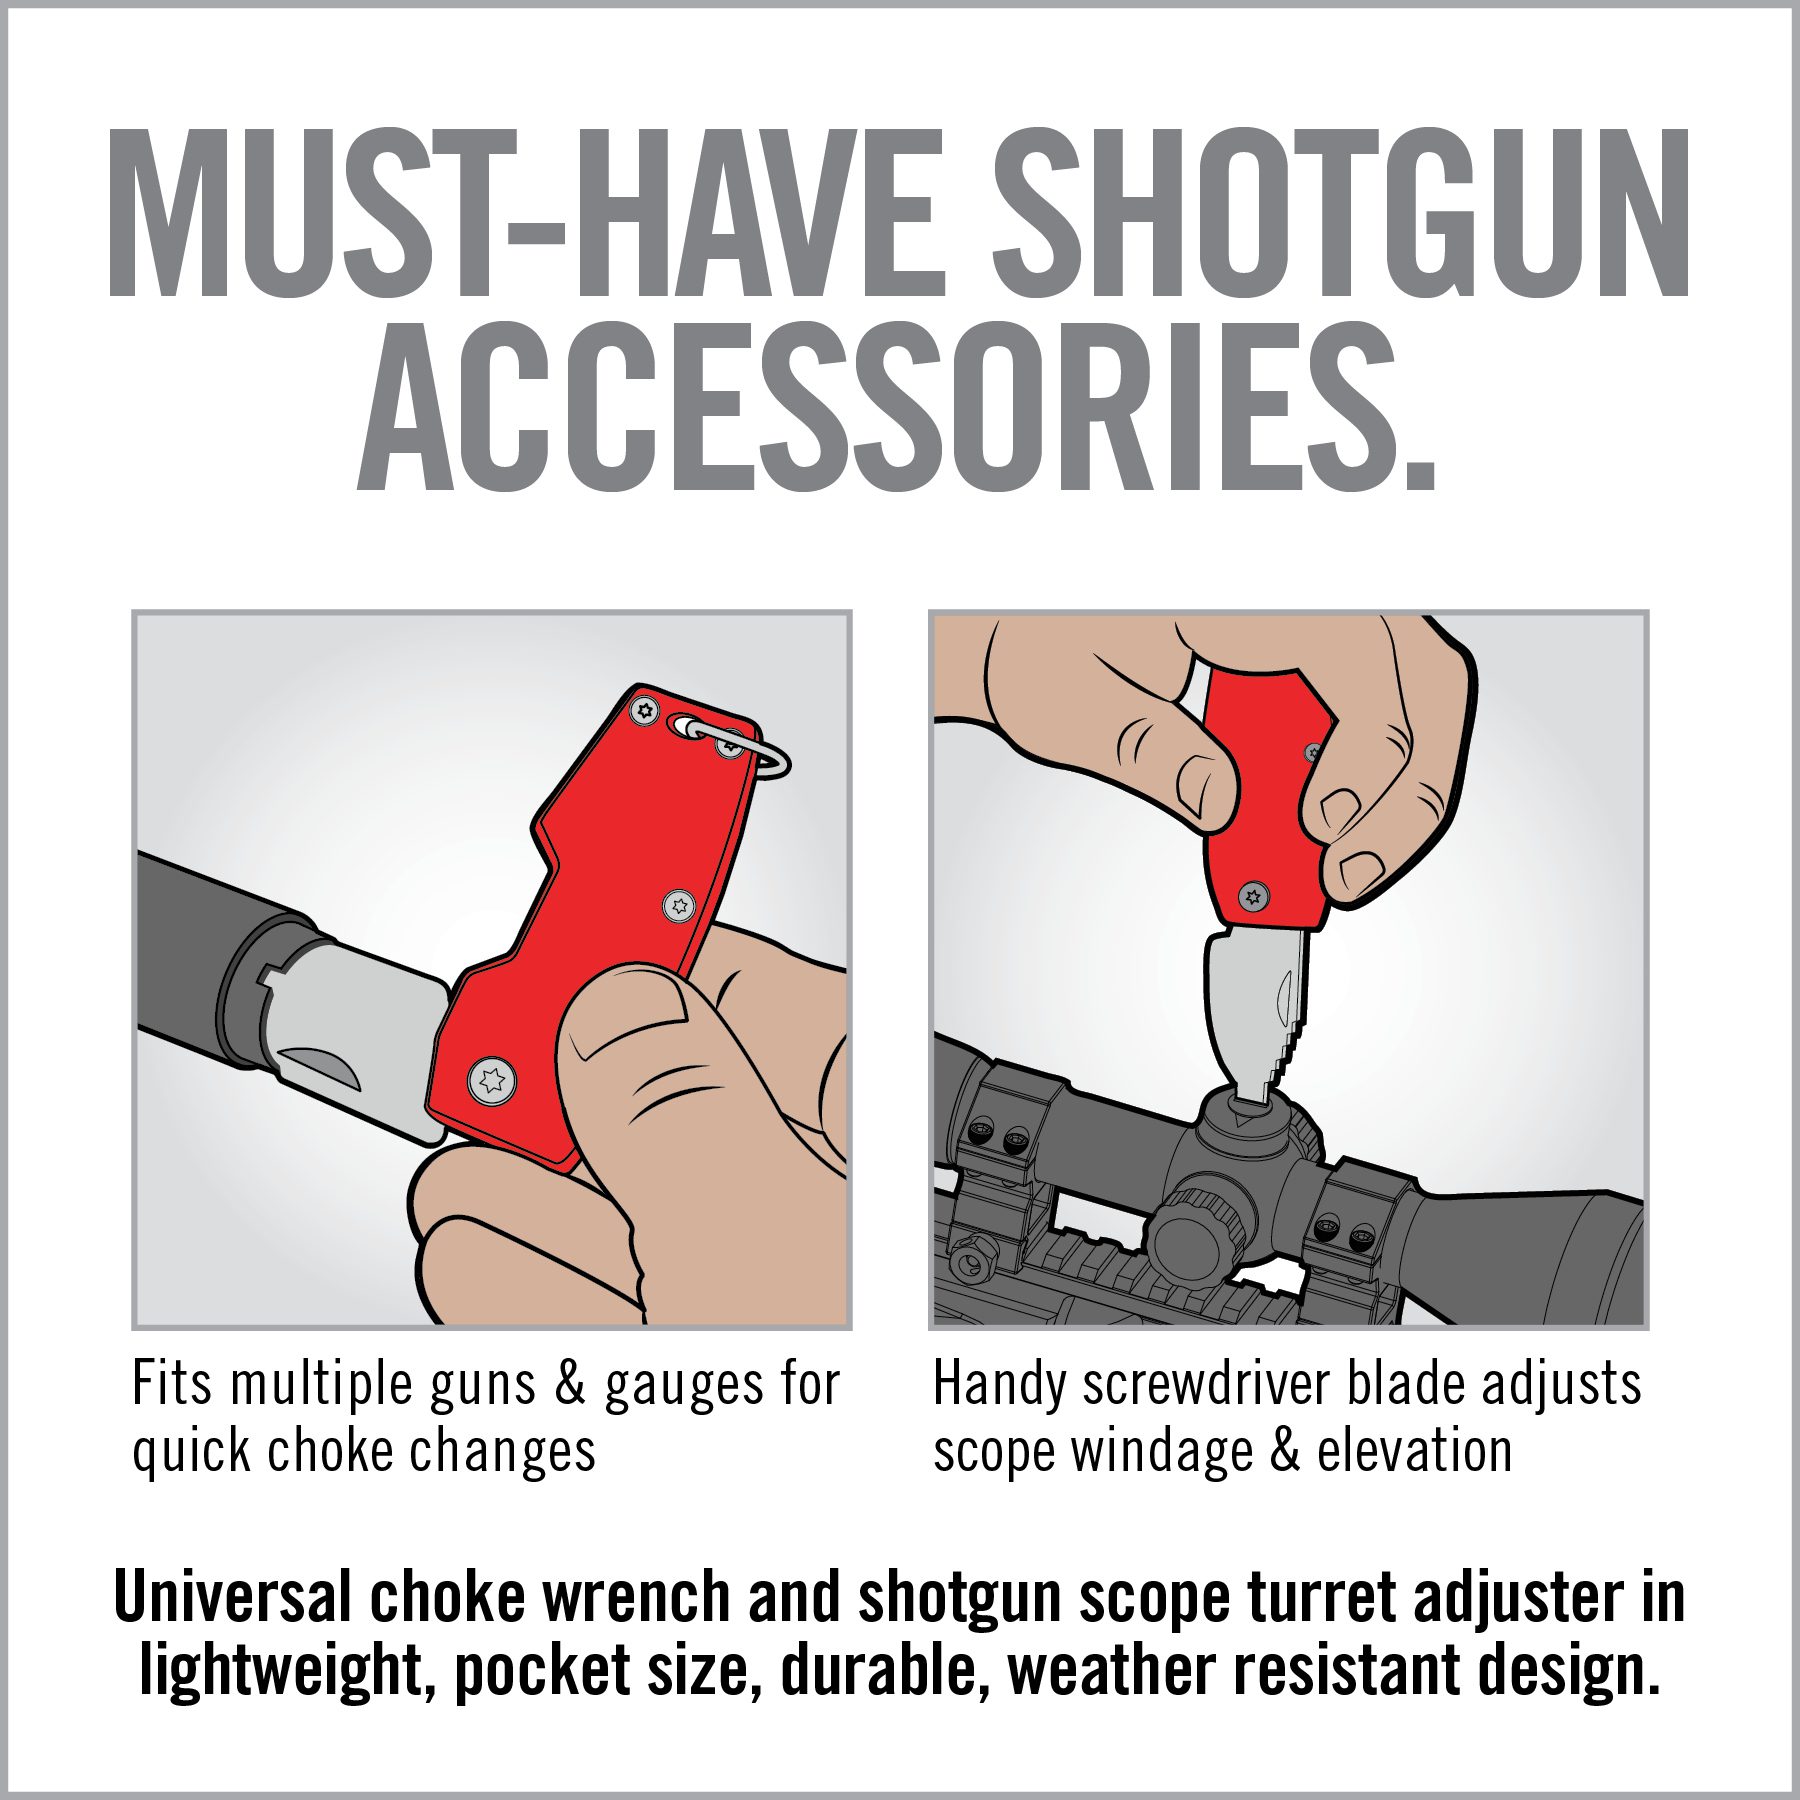 a poster describing how to use a gun